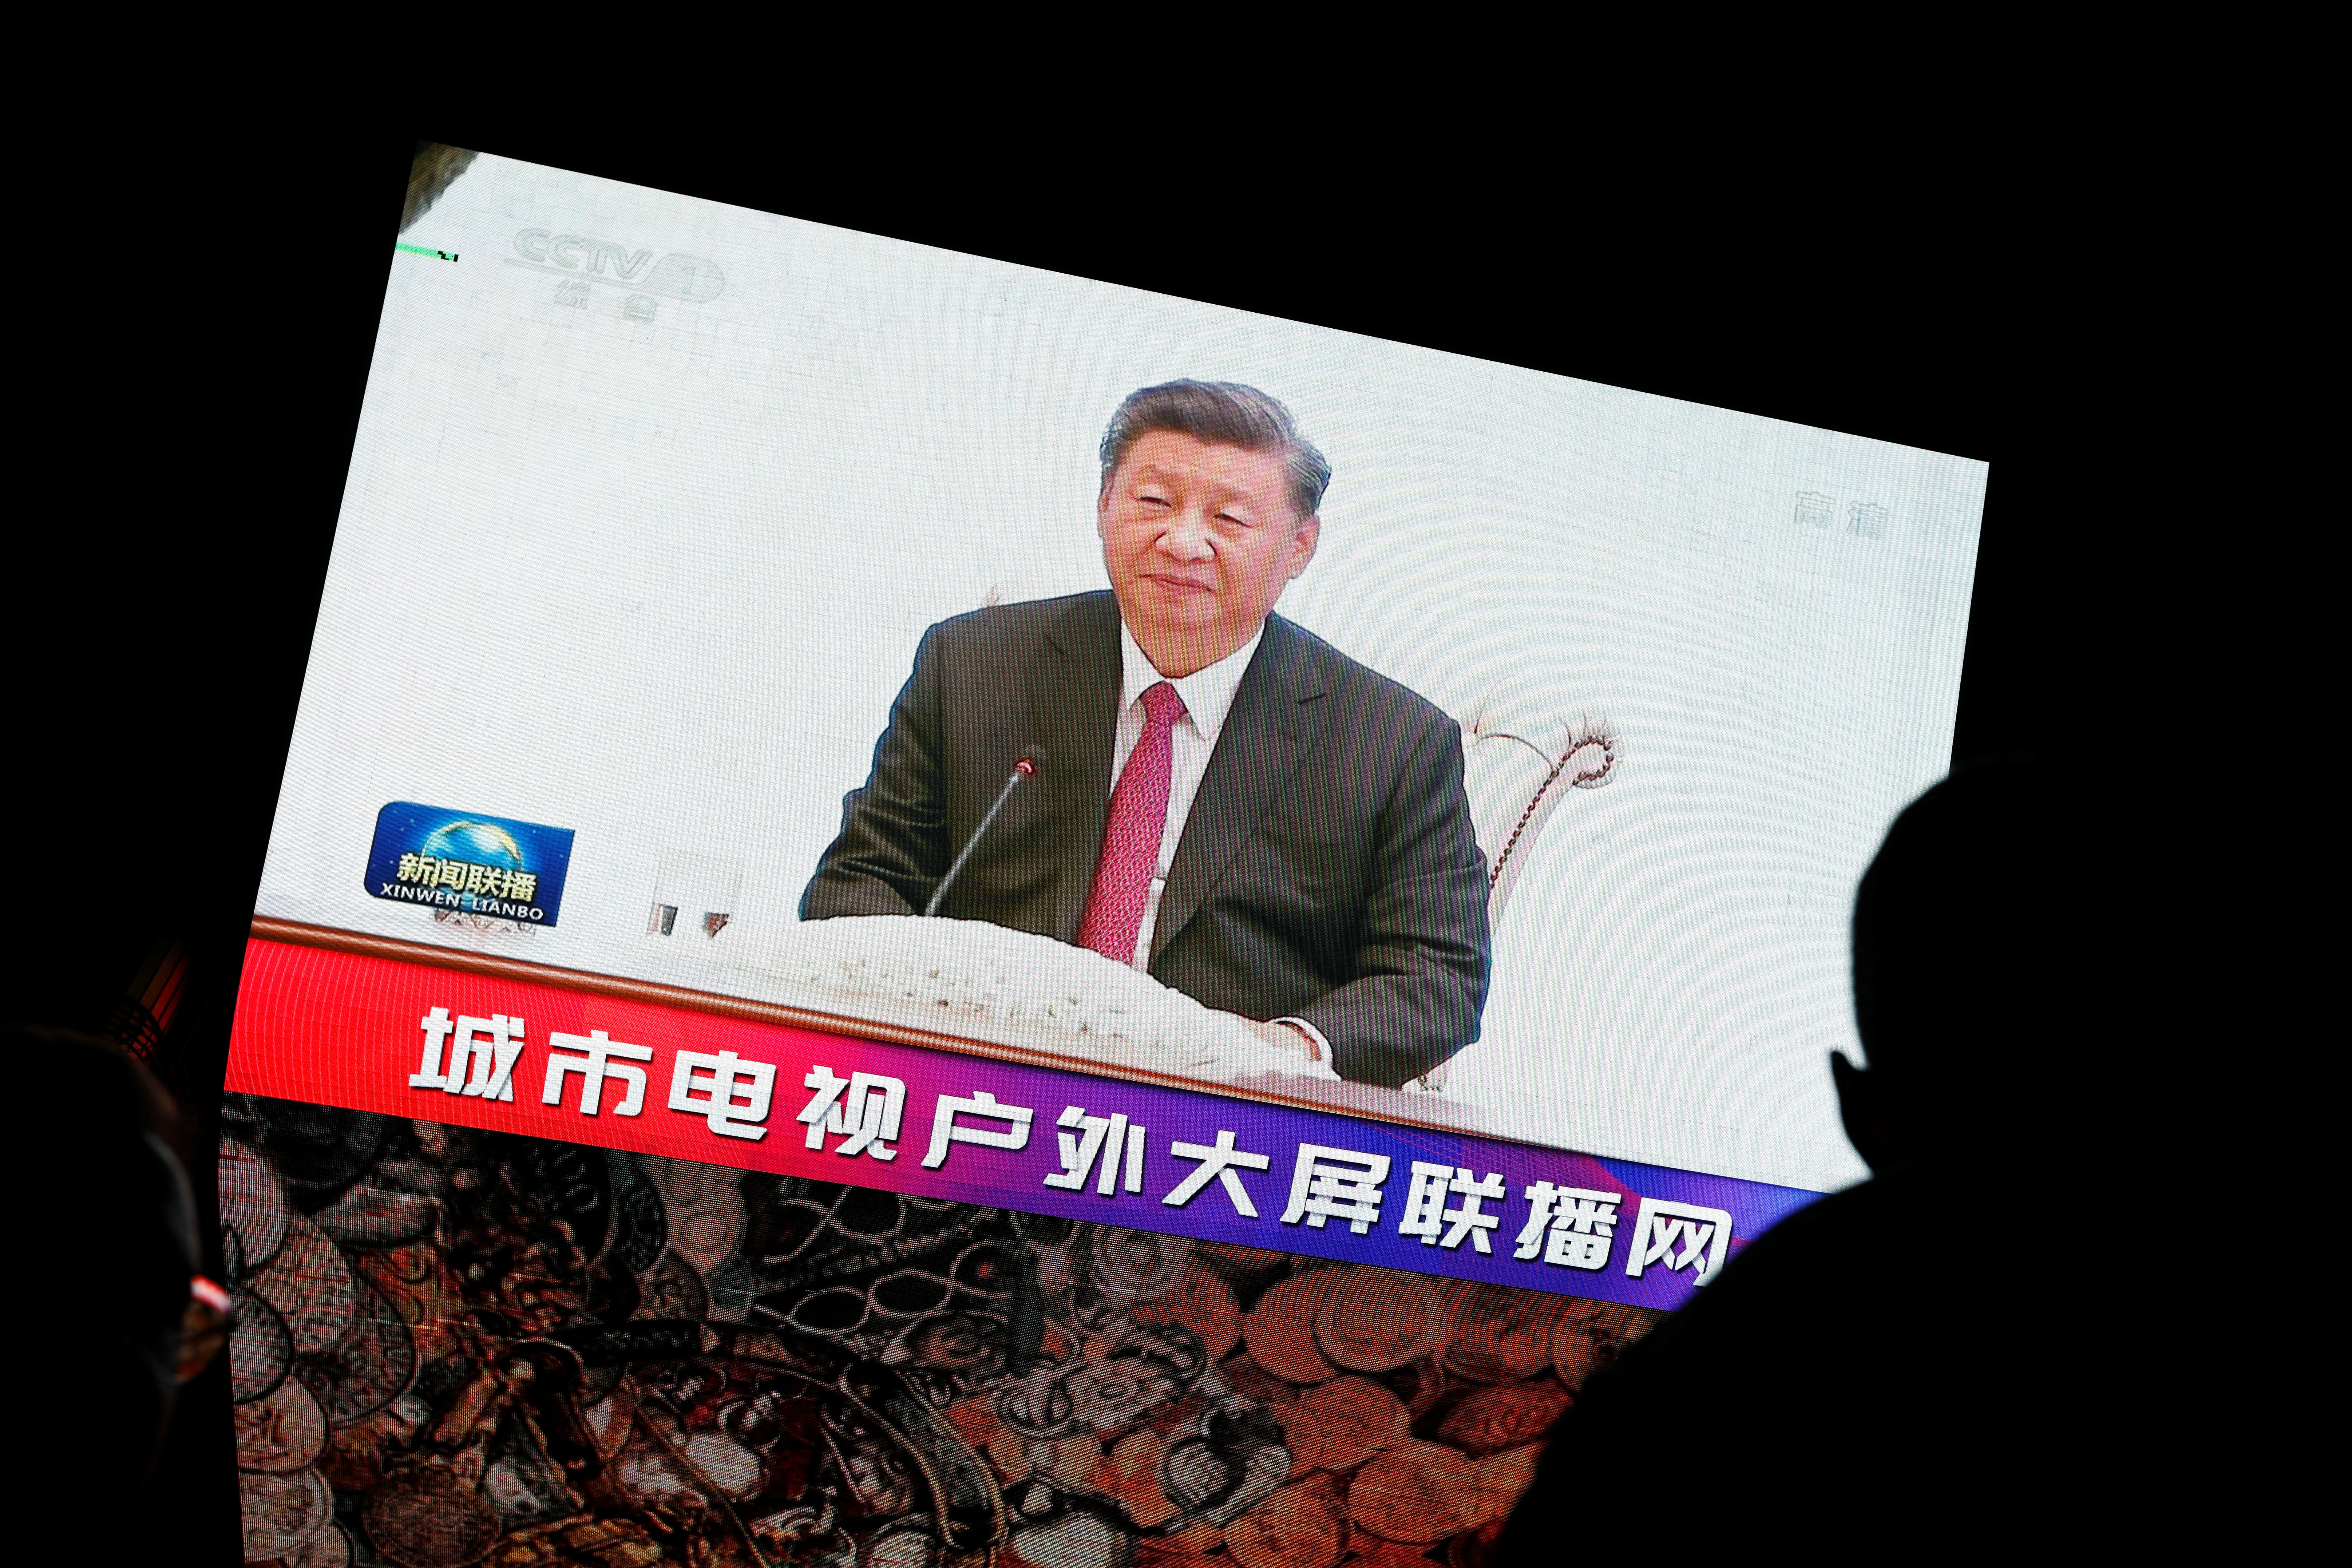 IMAGEN DE ARCHIVO. La visita fue la primera aparición de Xi en televisión desde que regresó de una cumbre regional en Uzbekistán (REUTERS/Florence Lo)